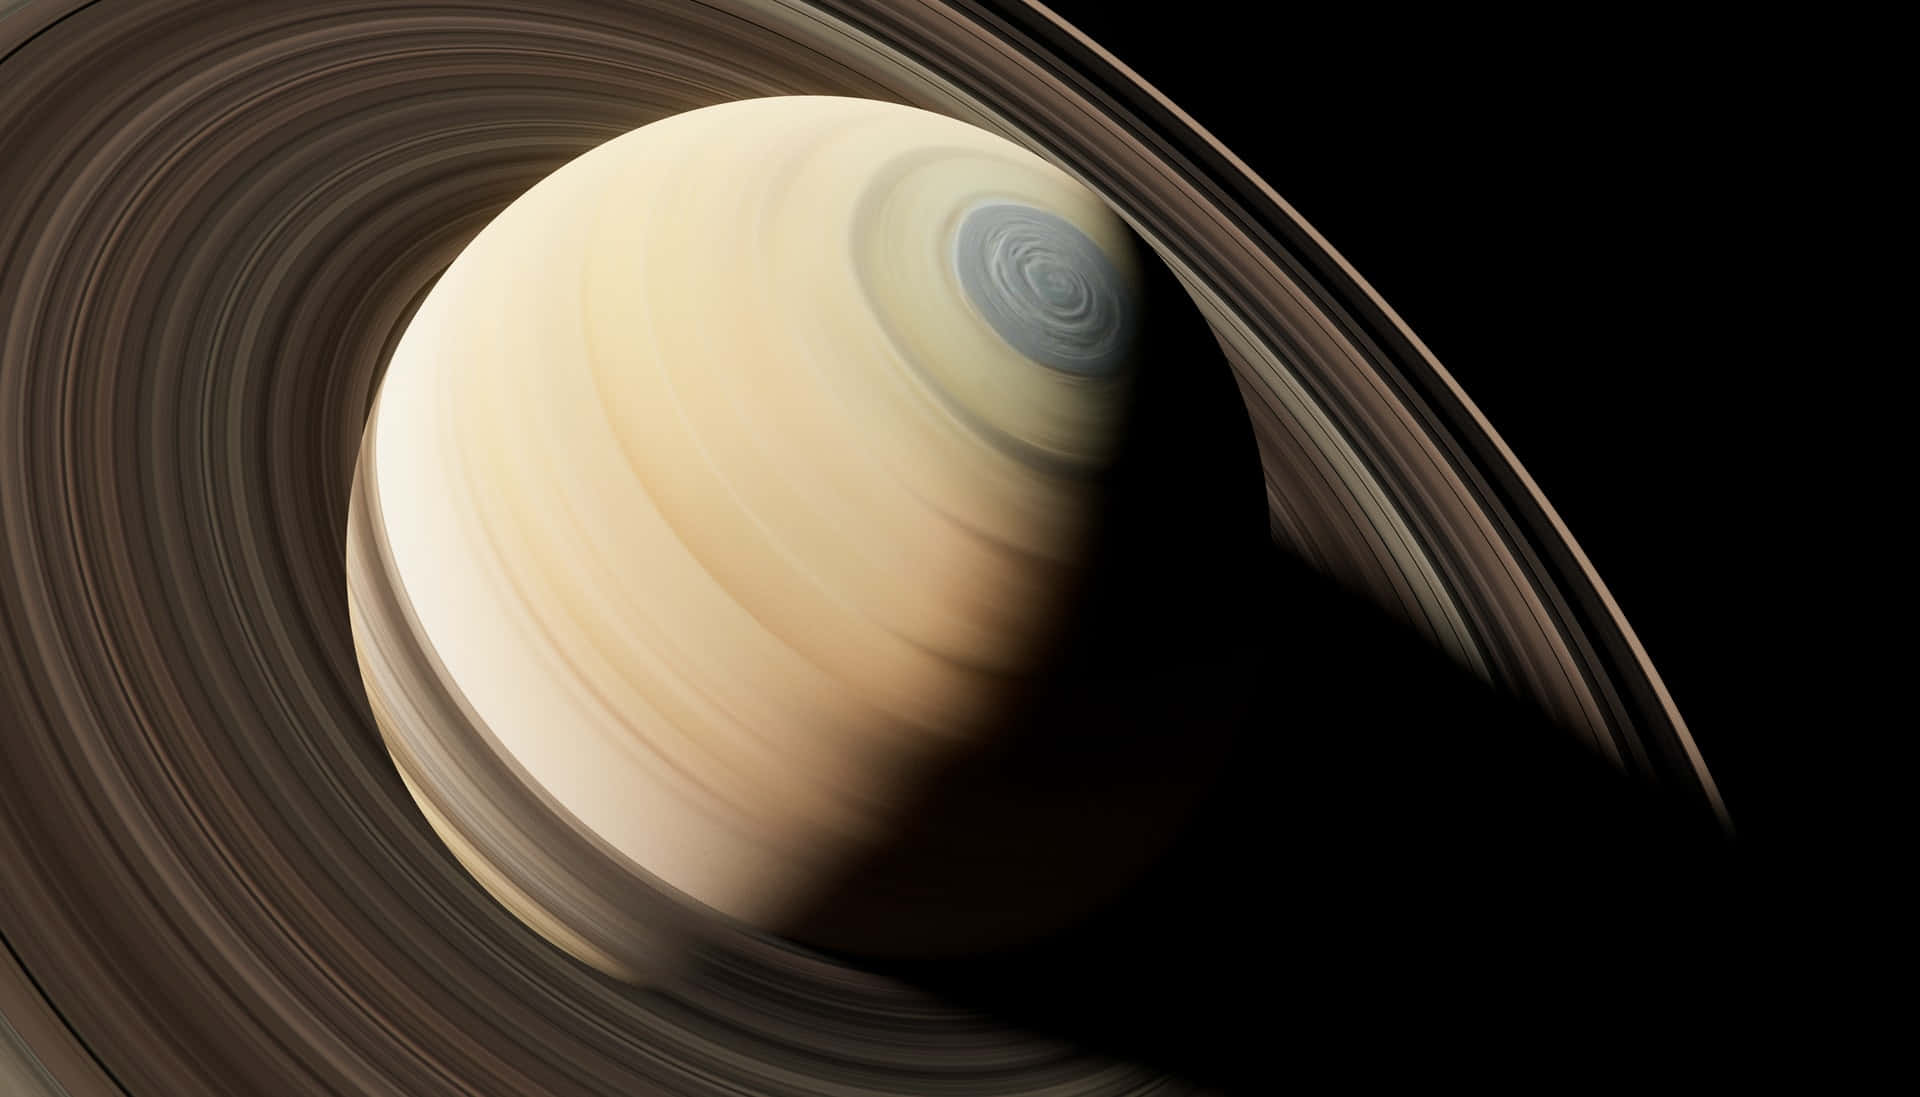 Saturnsringar Syns På Denna Bild.